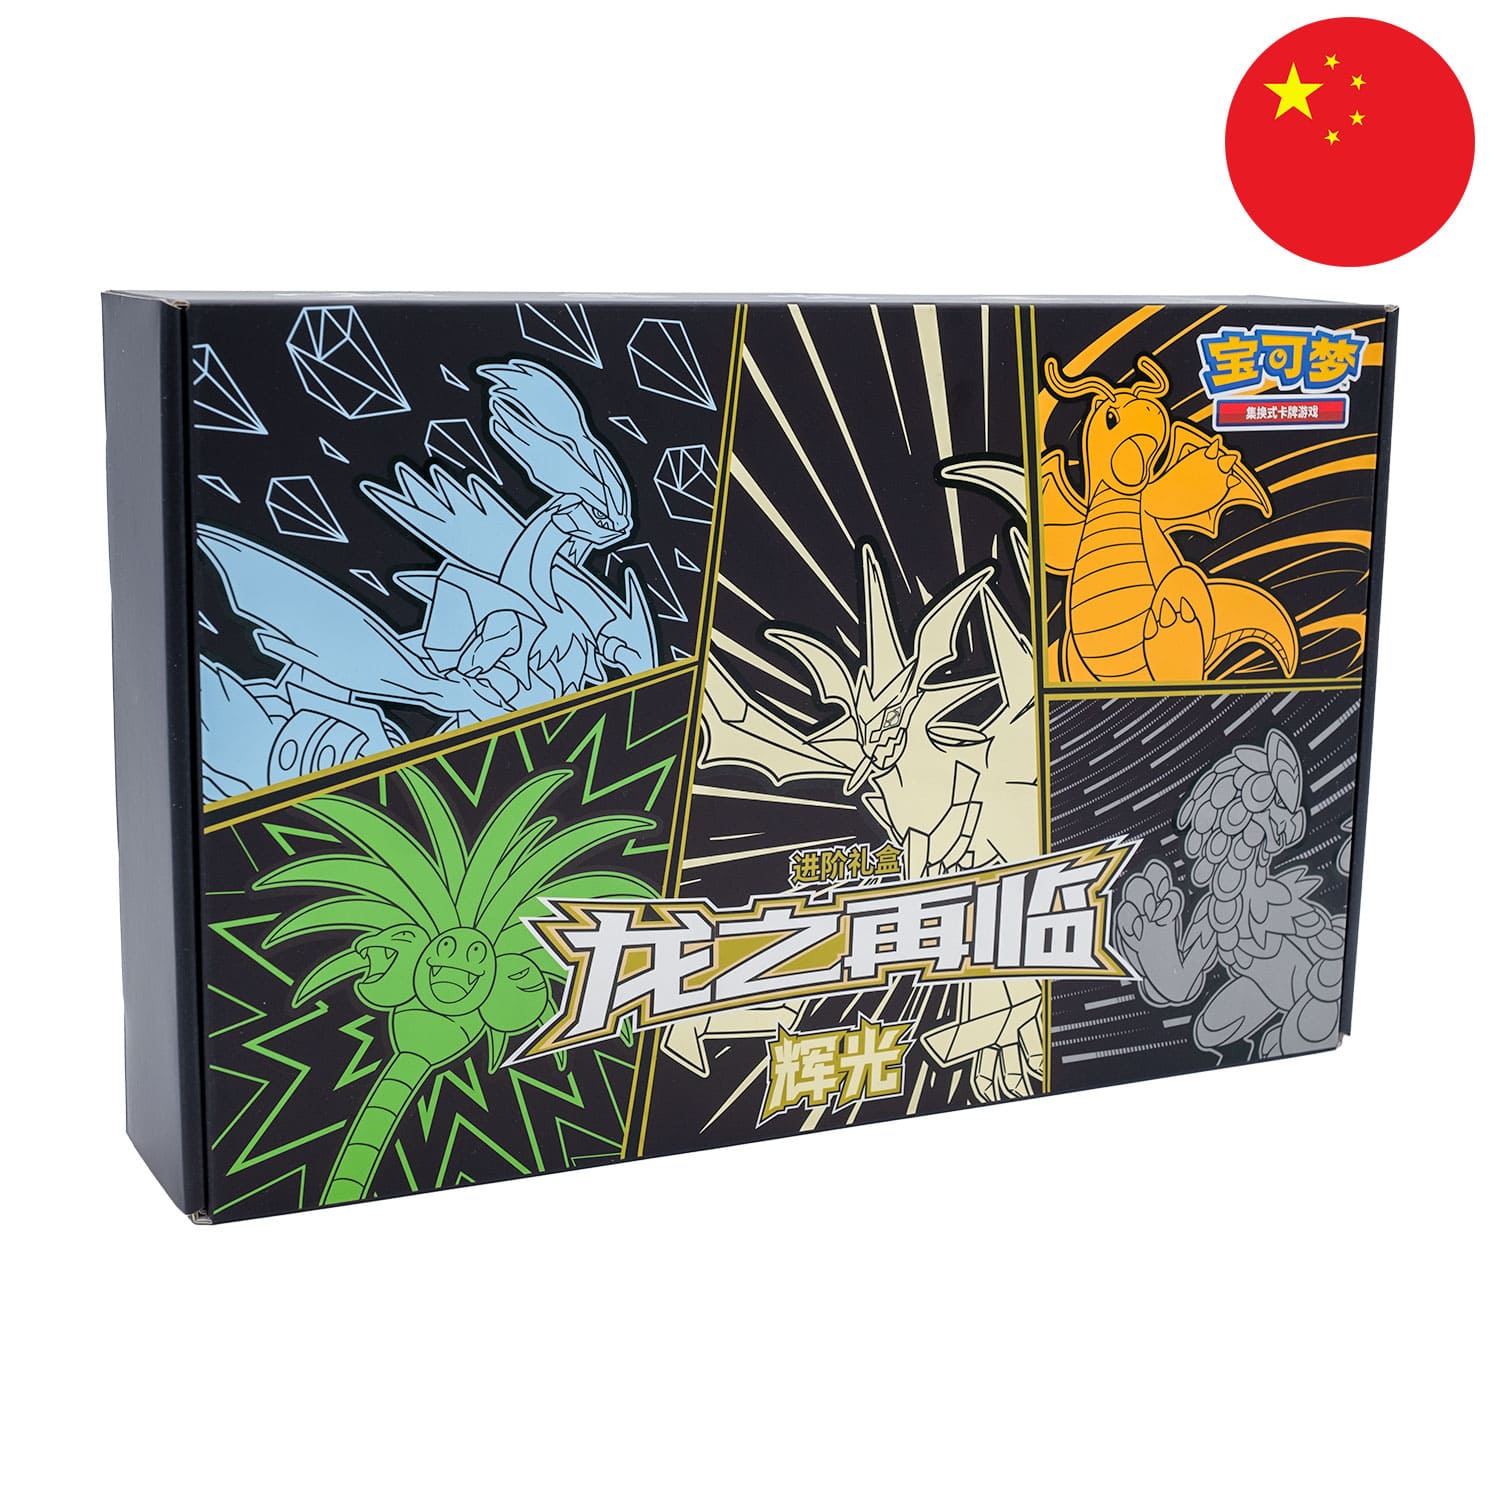 Die Ultra-Necrozma Return of the Dragon Box aus China, frontal&schräg als Hauptbild, mit der Flagge Chinas in der Ecke.